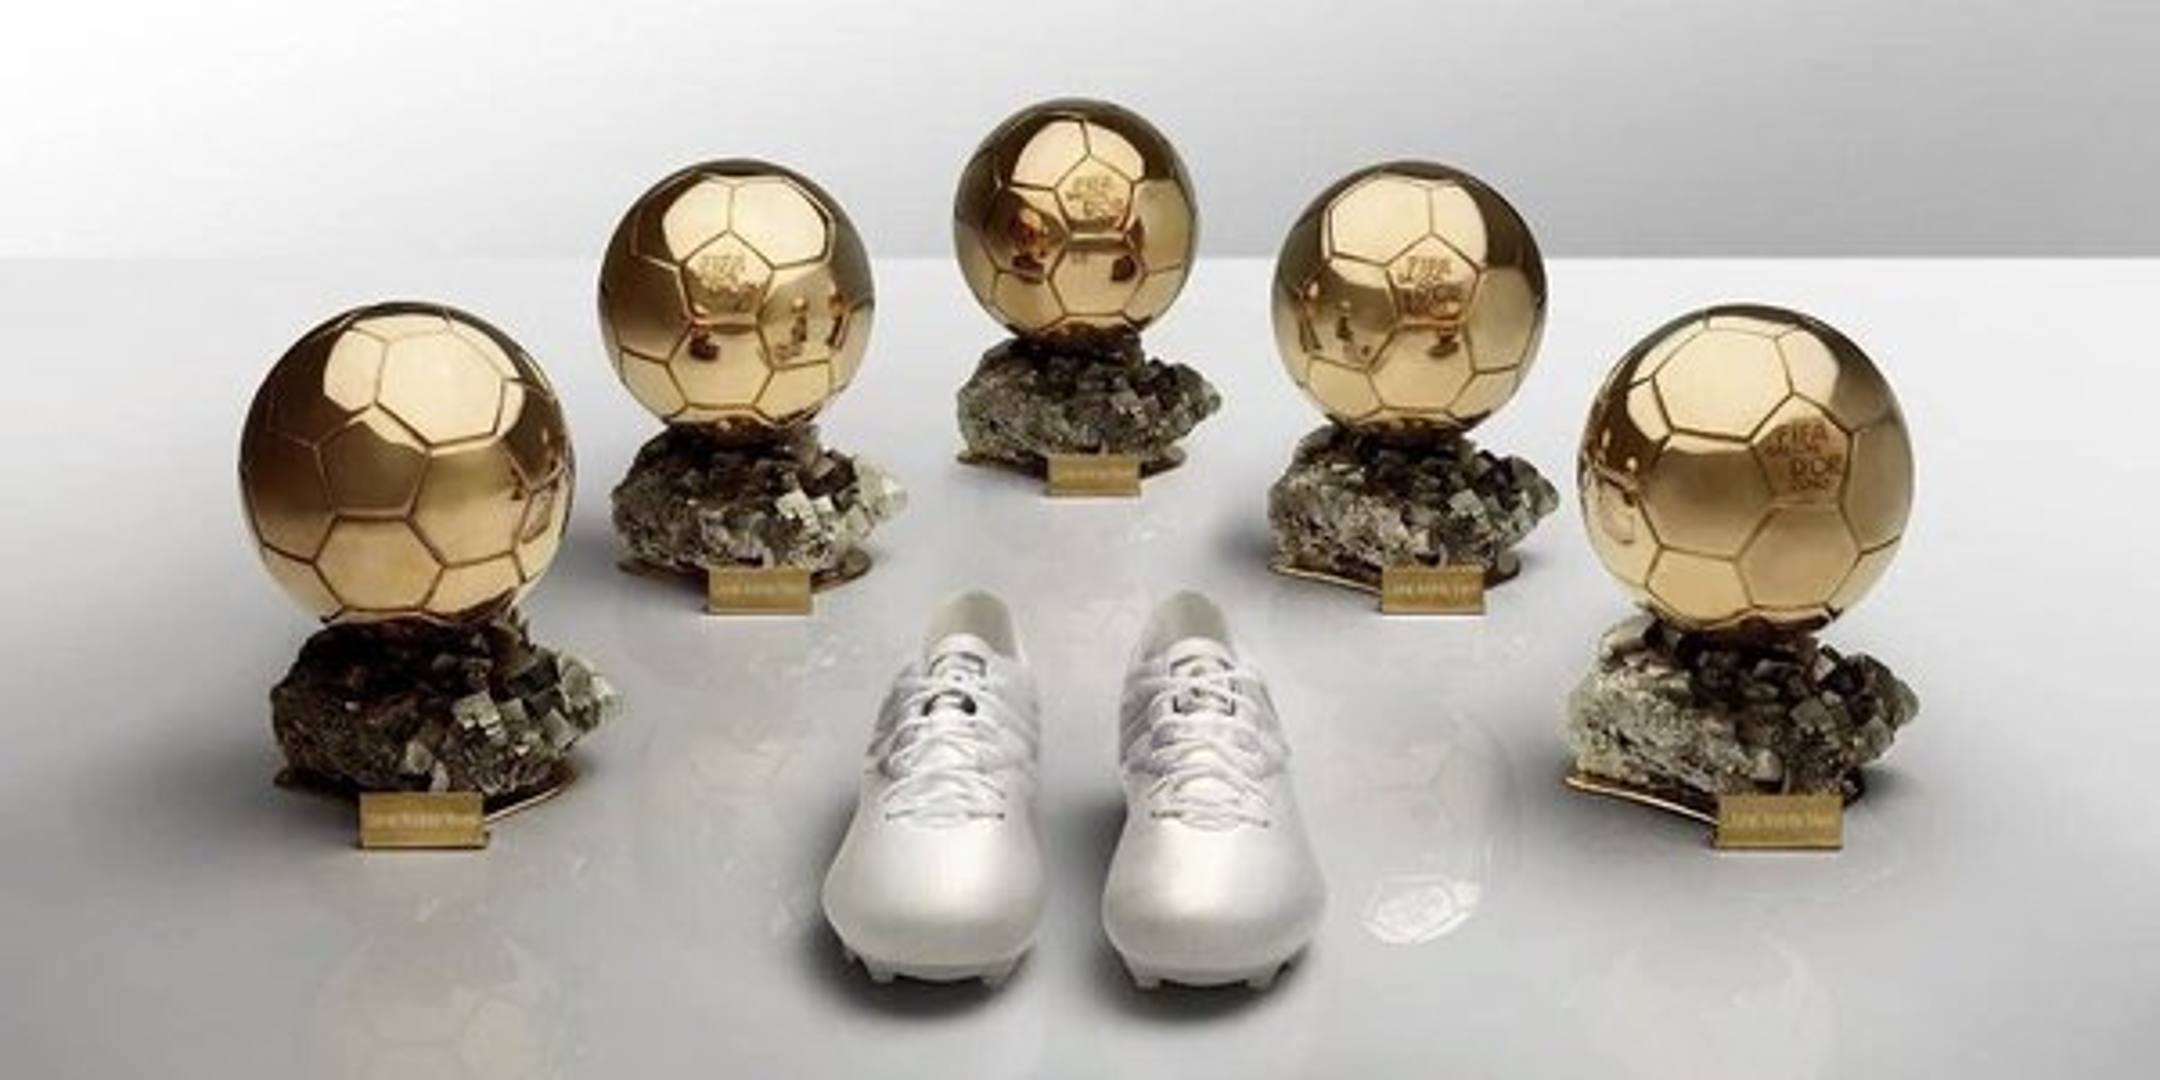 Messi, scarpe da Pallone d'oro - La Gazzetta dello Sport2160 x 1080